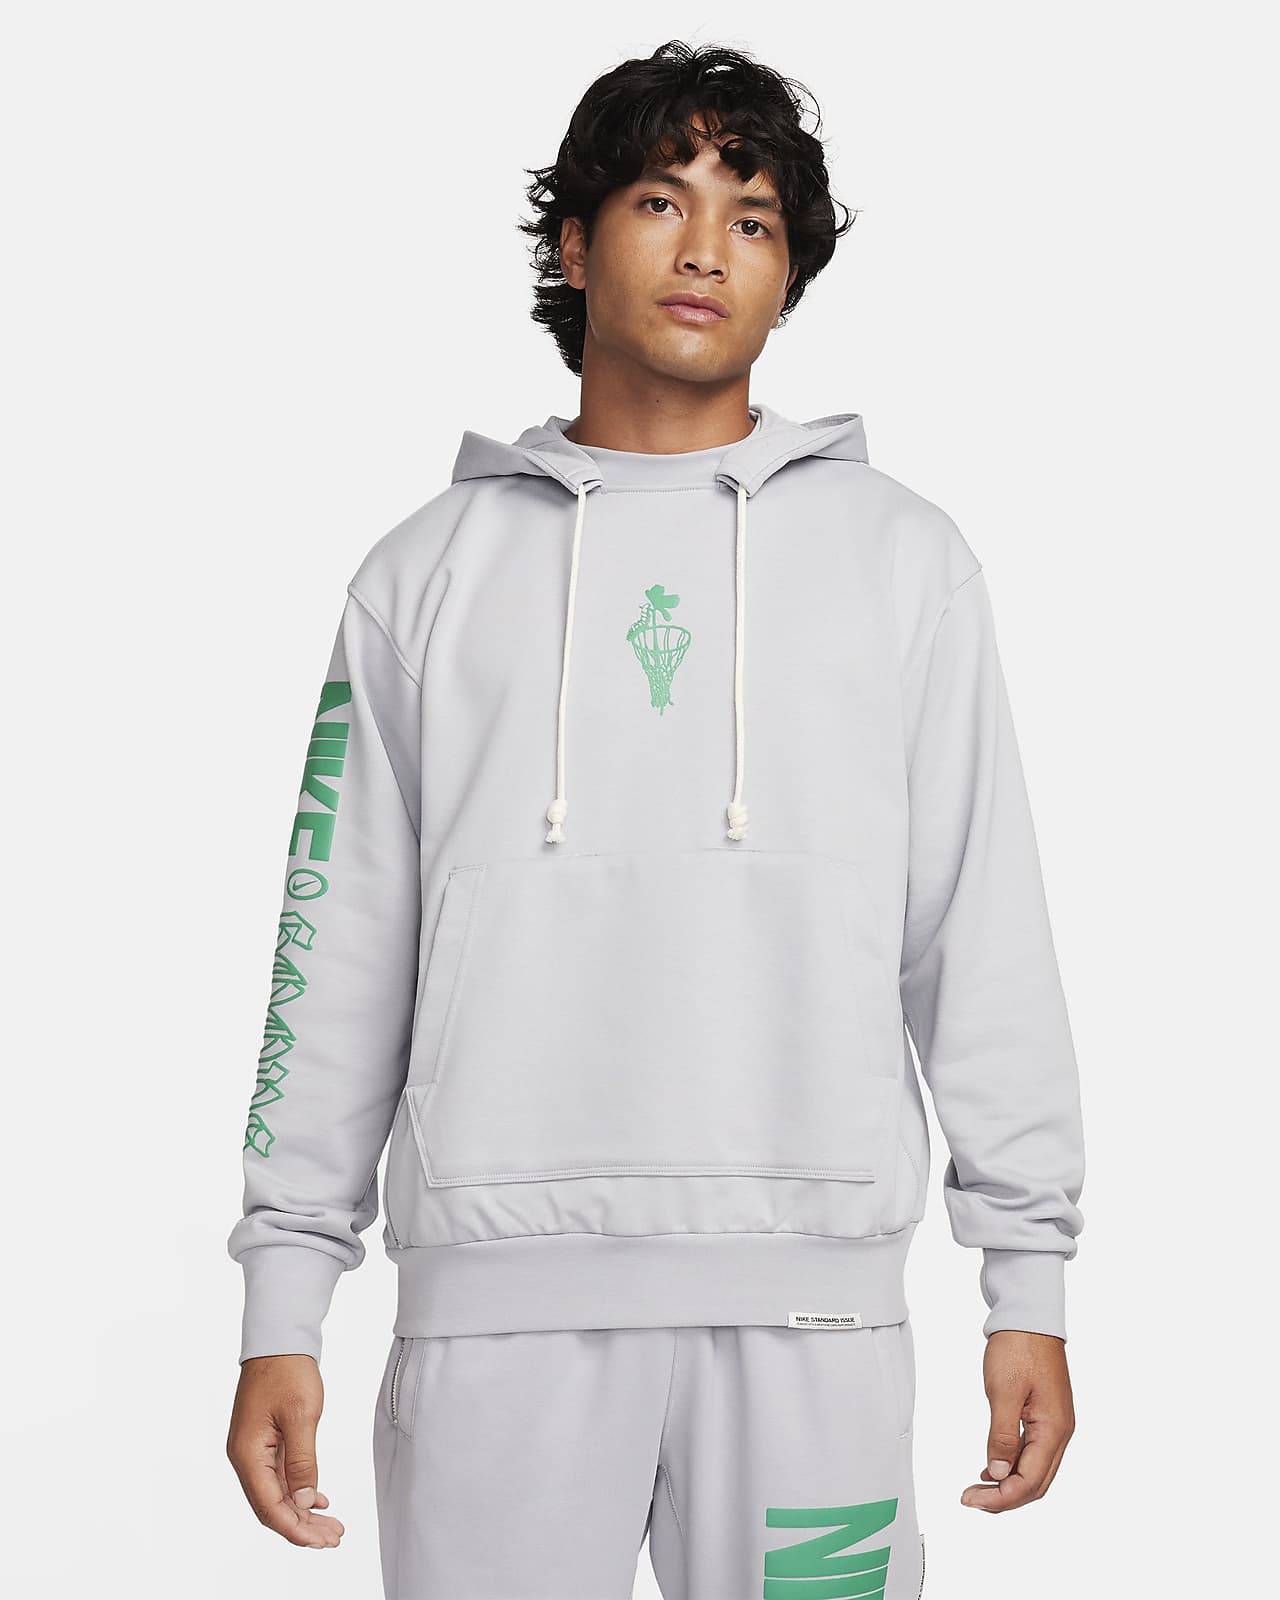 Nike Standard Issue Sudadera con capucha Nike Dri-FIT - Hombre